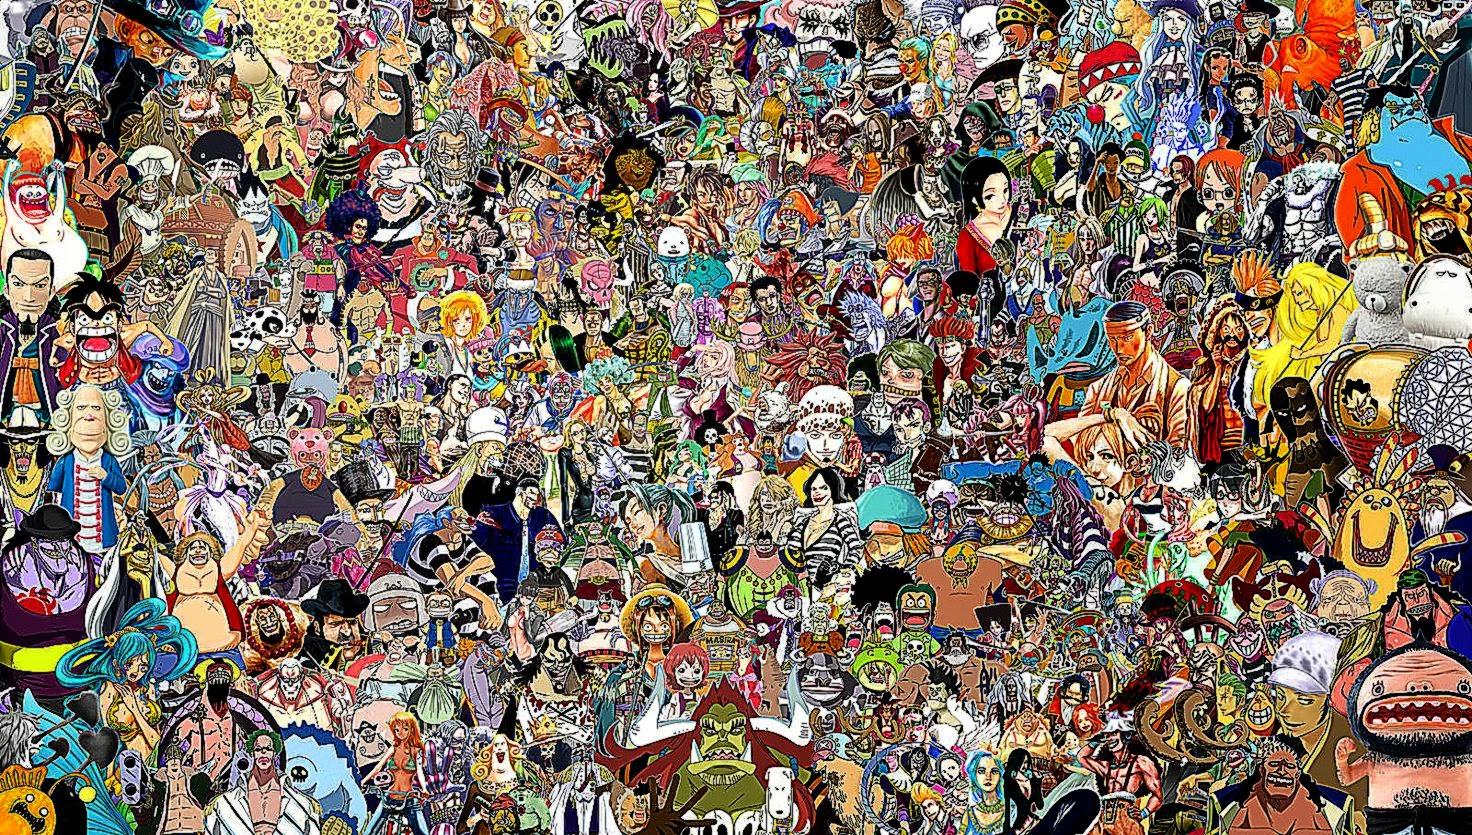 tutti gli anime wallpaper hd,persone,folla,arte,fan,collage